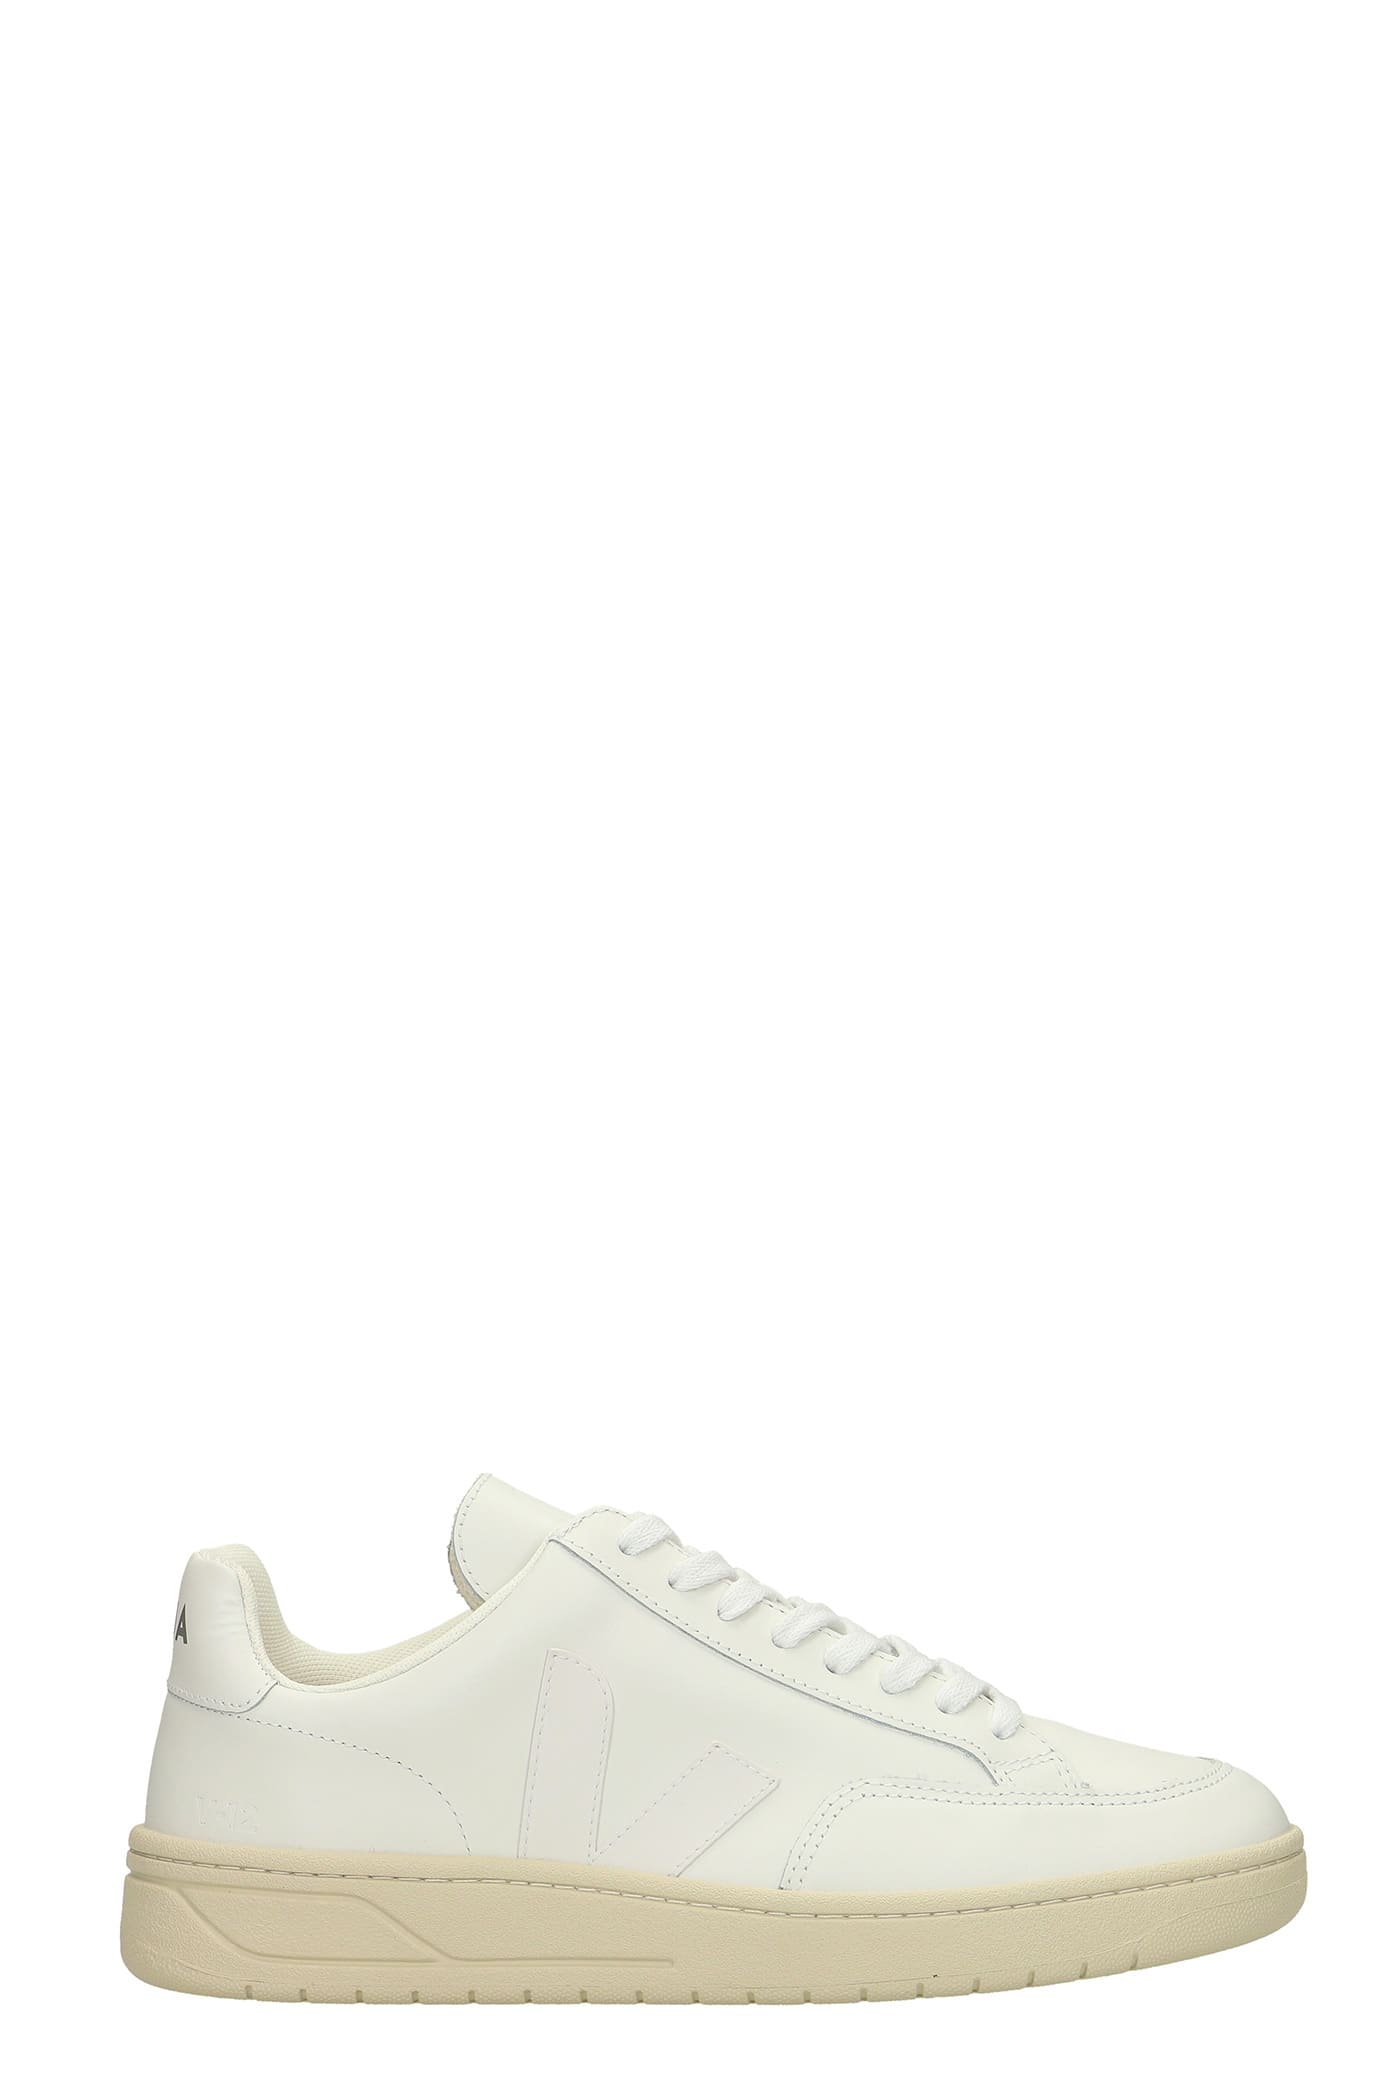 Veja V-12 Sneakers In White Leather